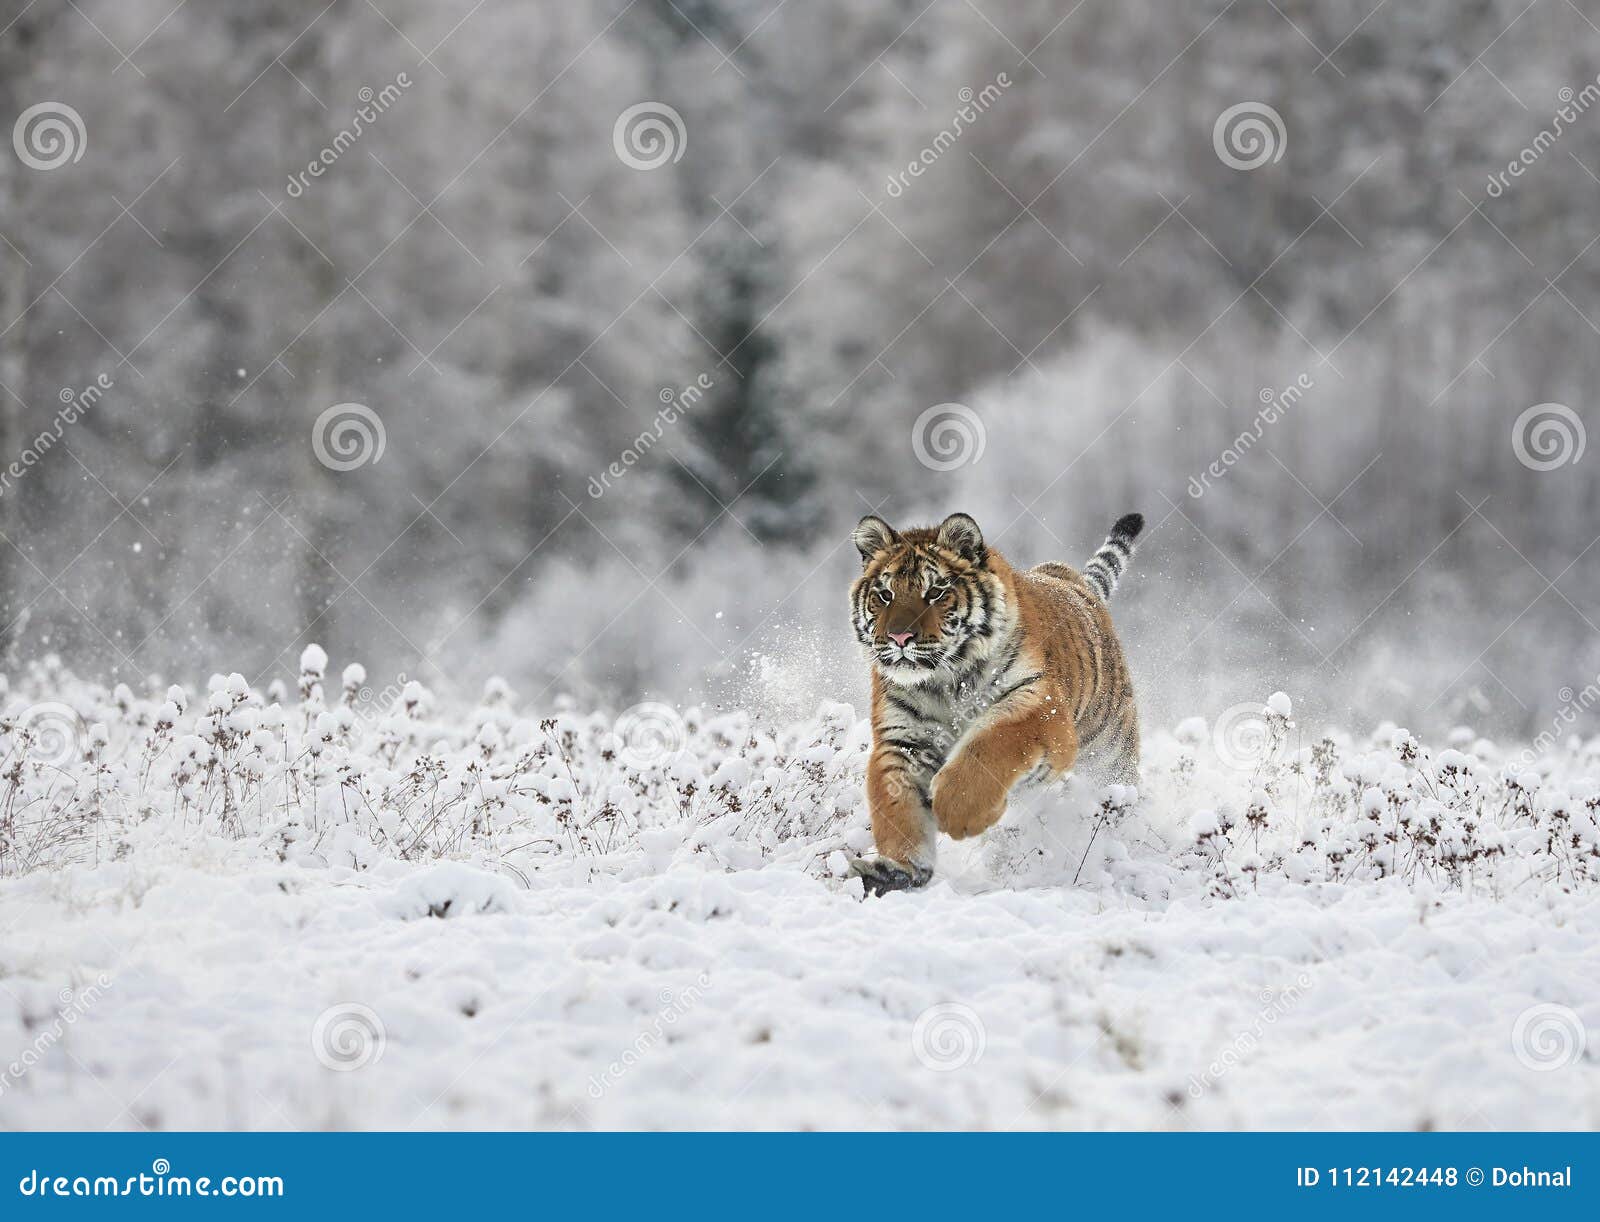 the siberian tiger panthera tigris tigris